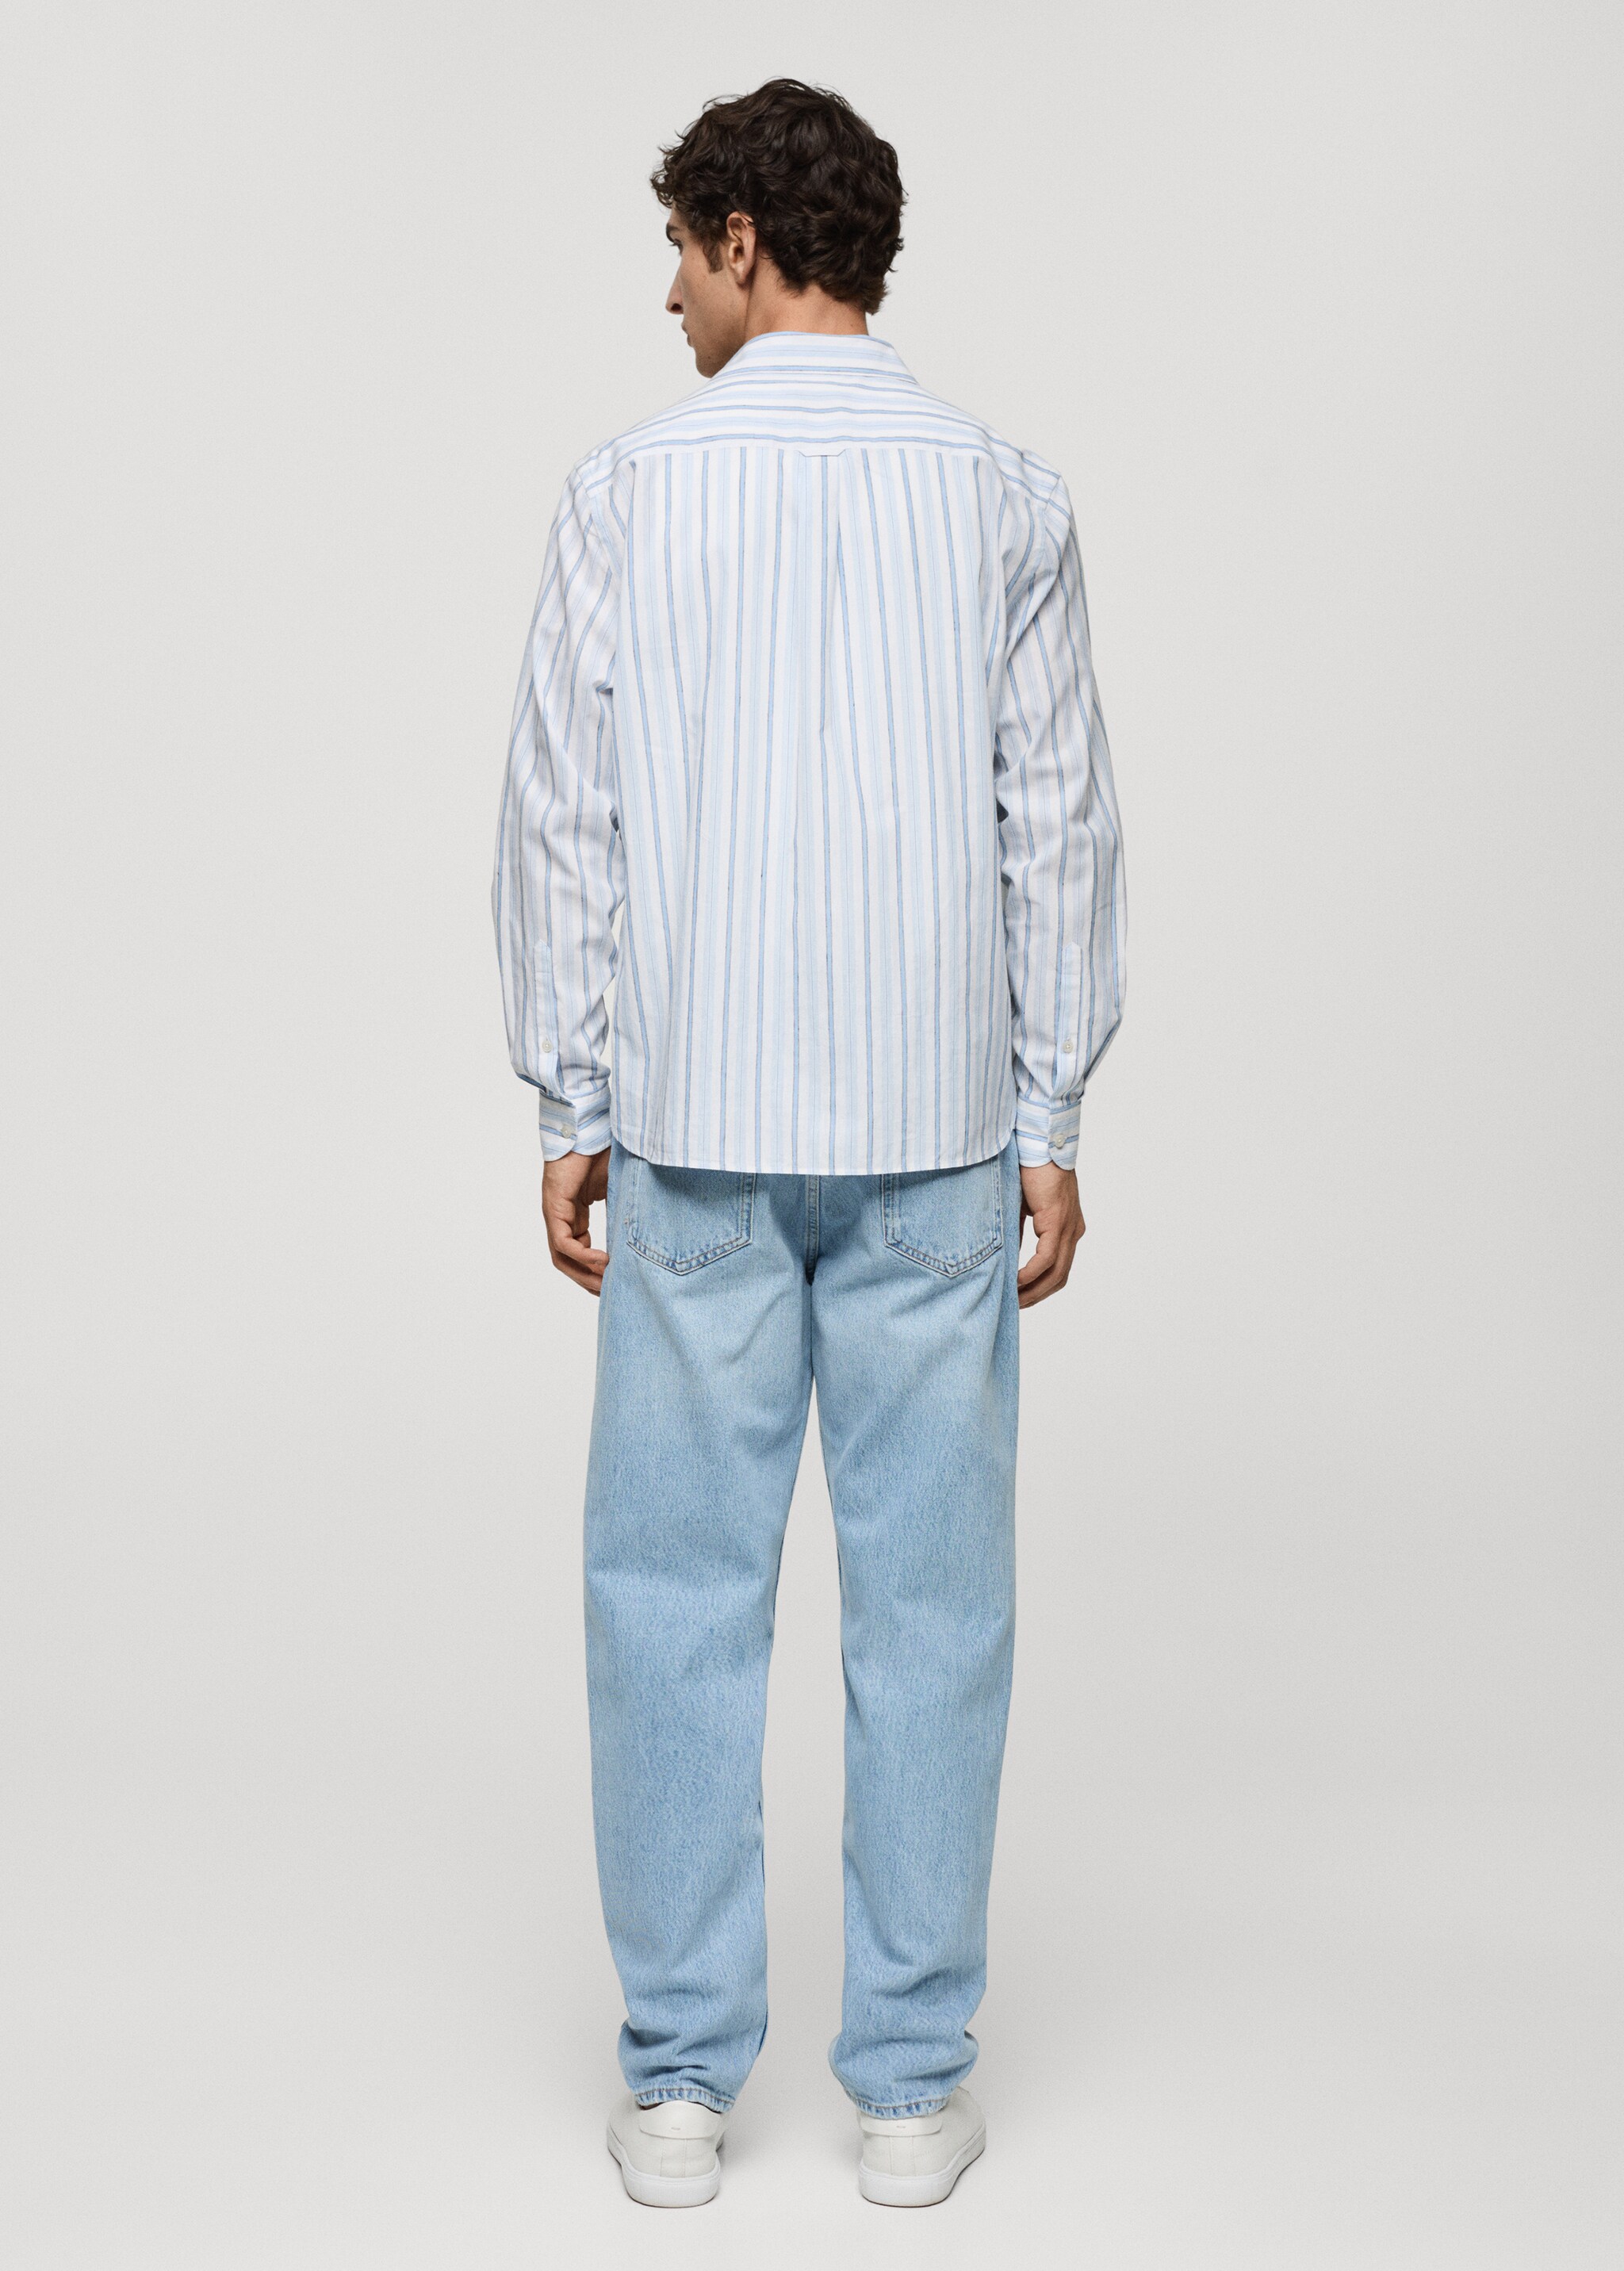 Camisa classic fit algodón lino rayas rústico - Reverso del artículo